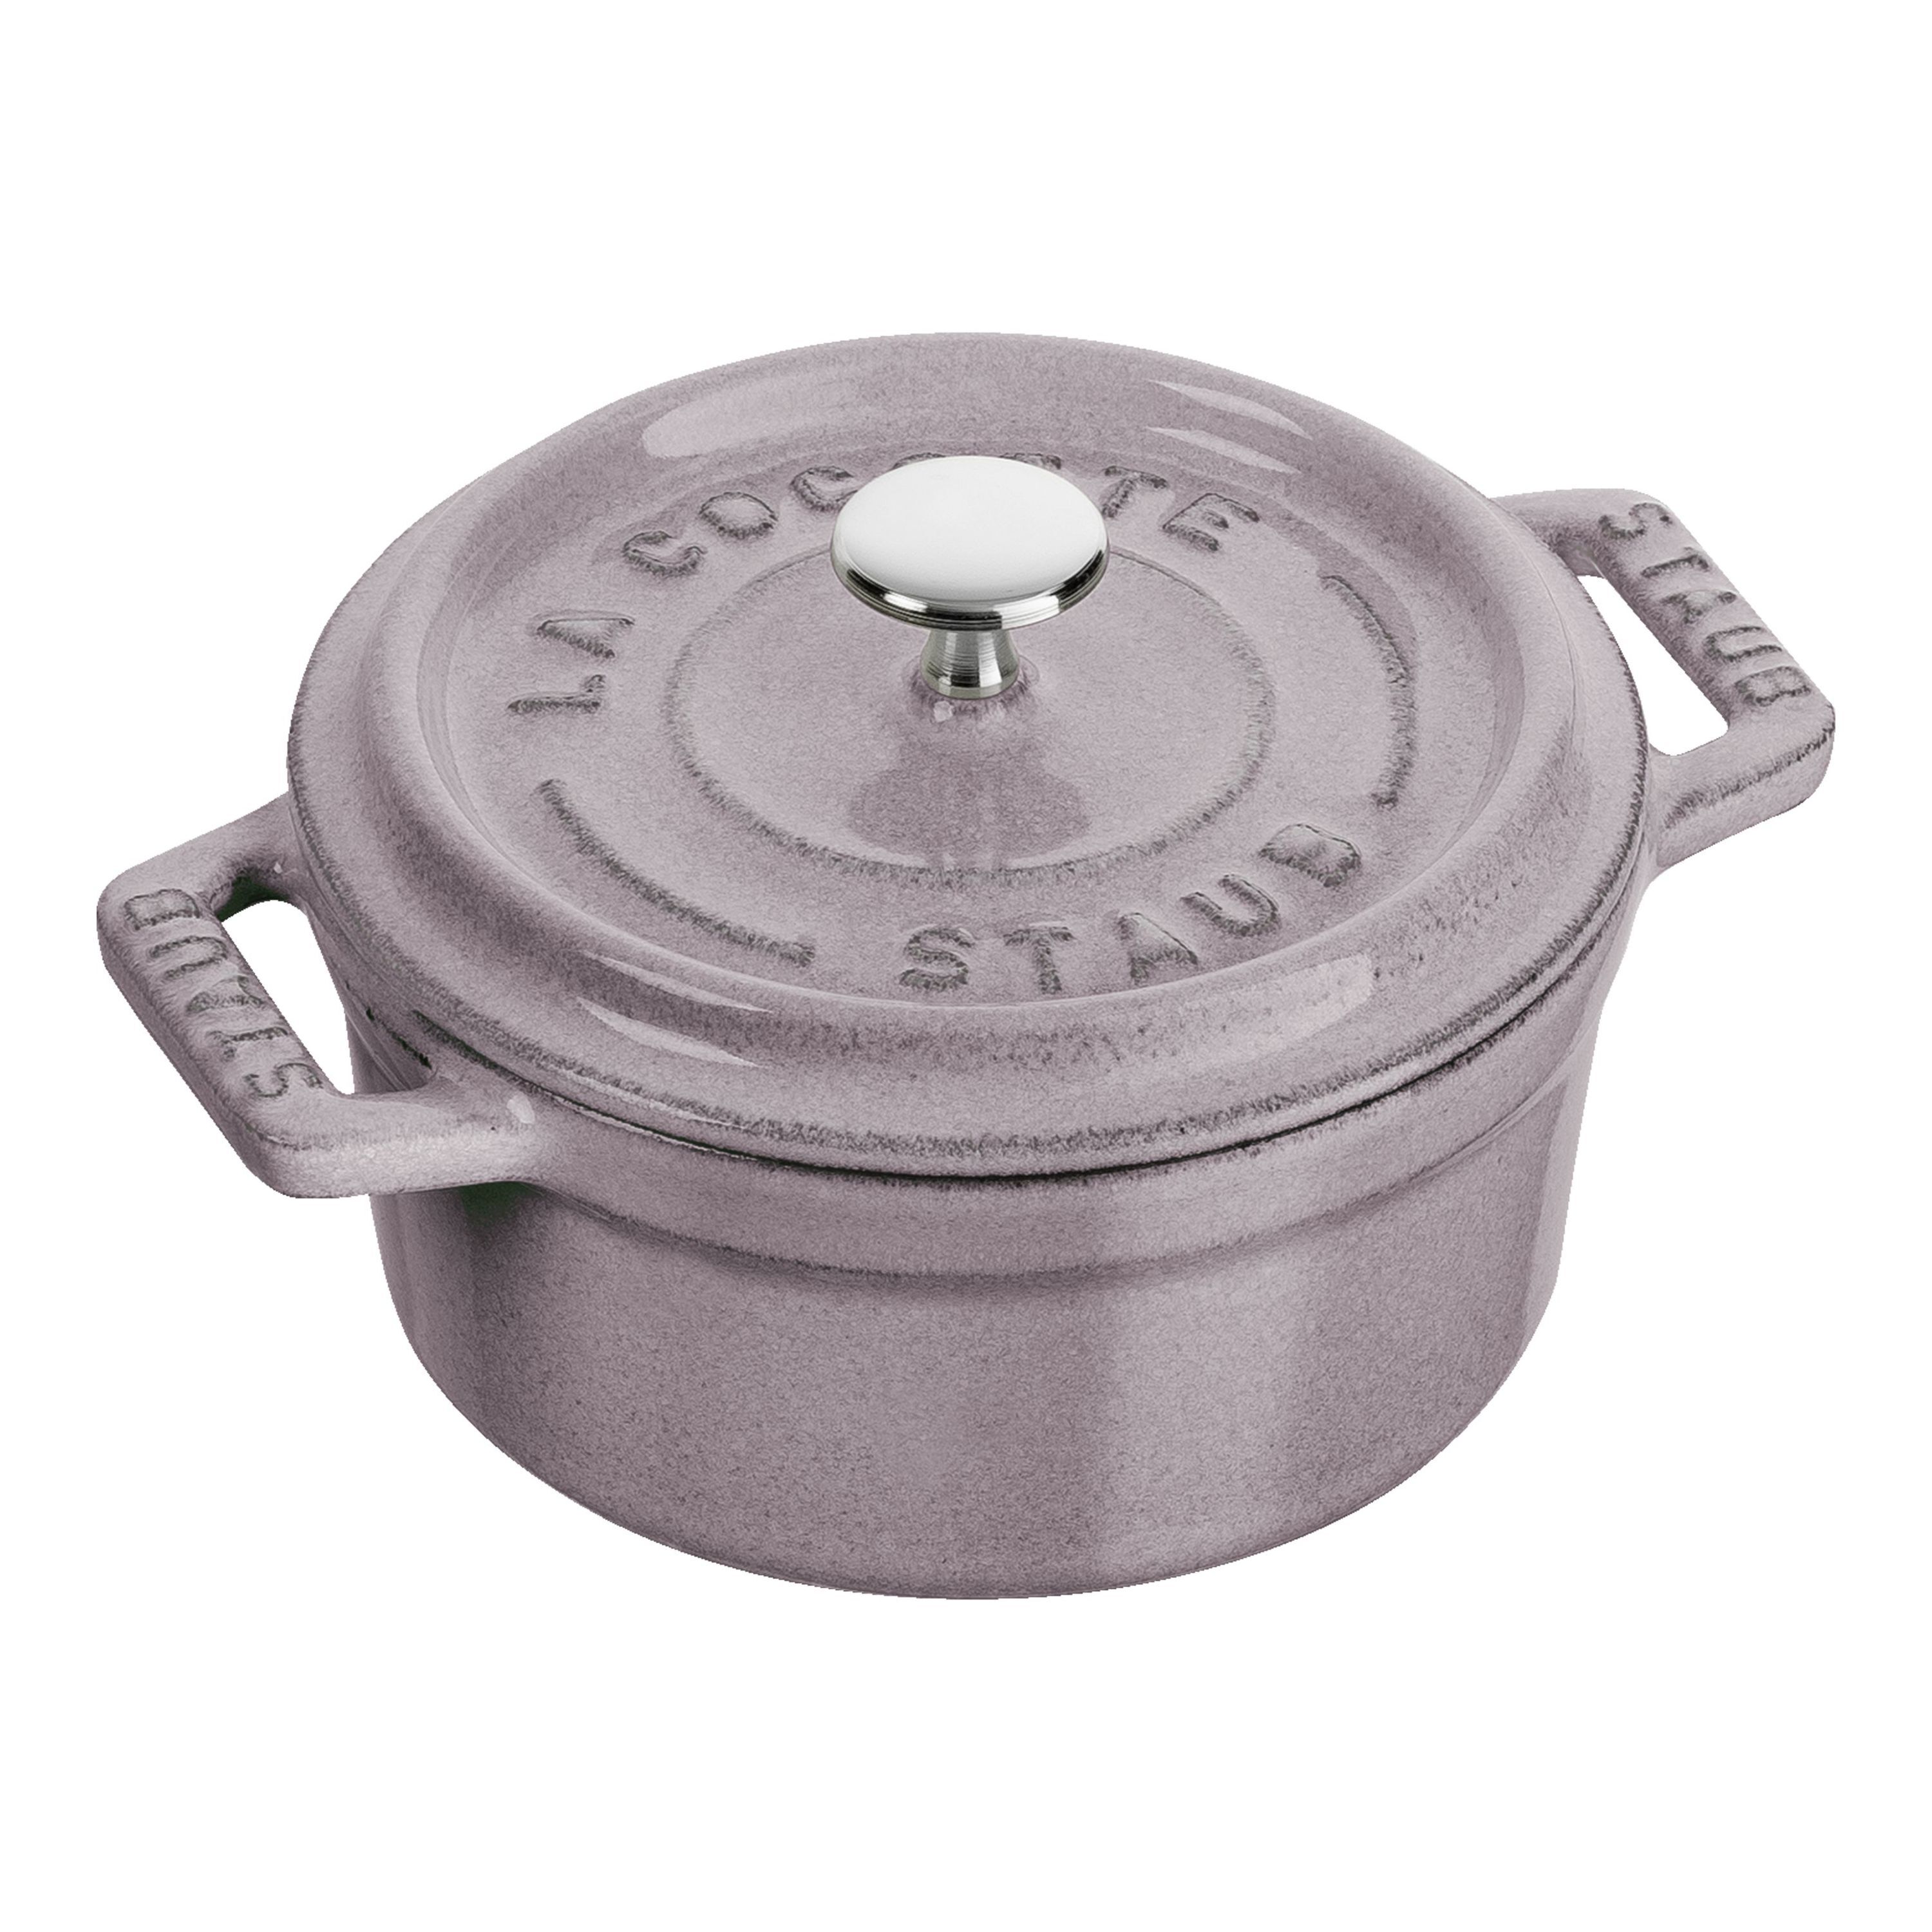 ラウンド 10cm| 鋳物ホーロー鍋| ストウブ(STAUB)公式通販